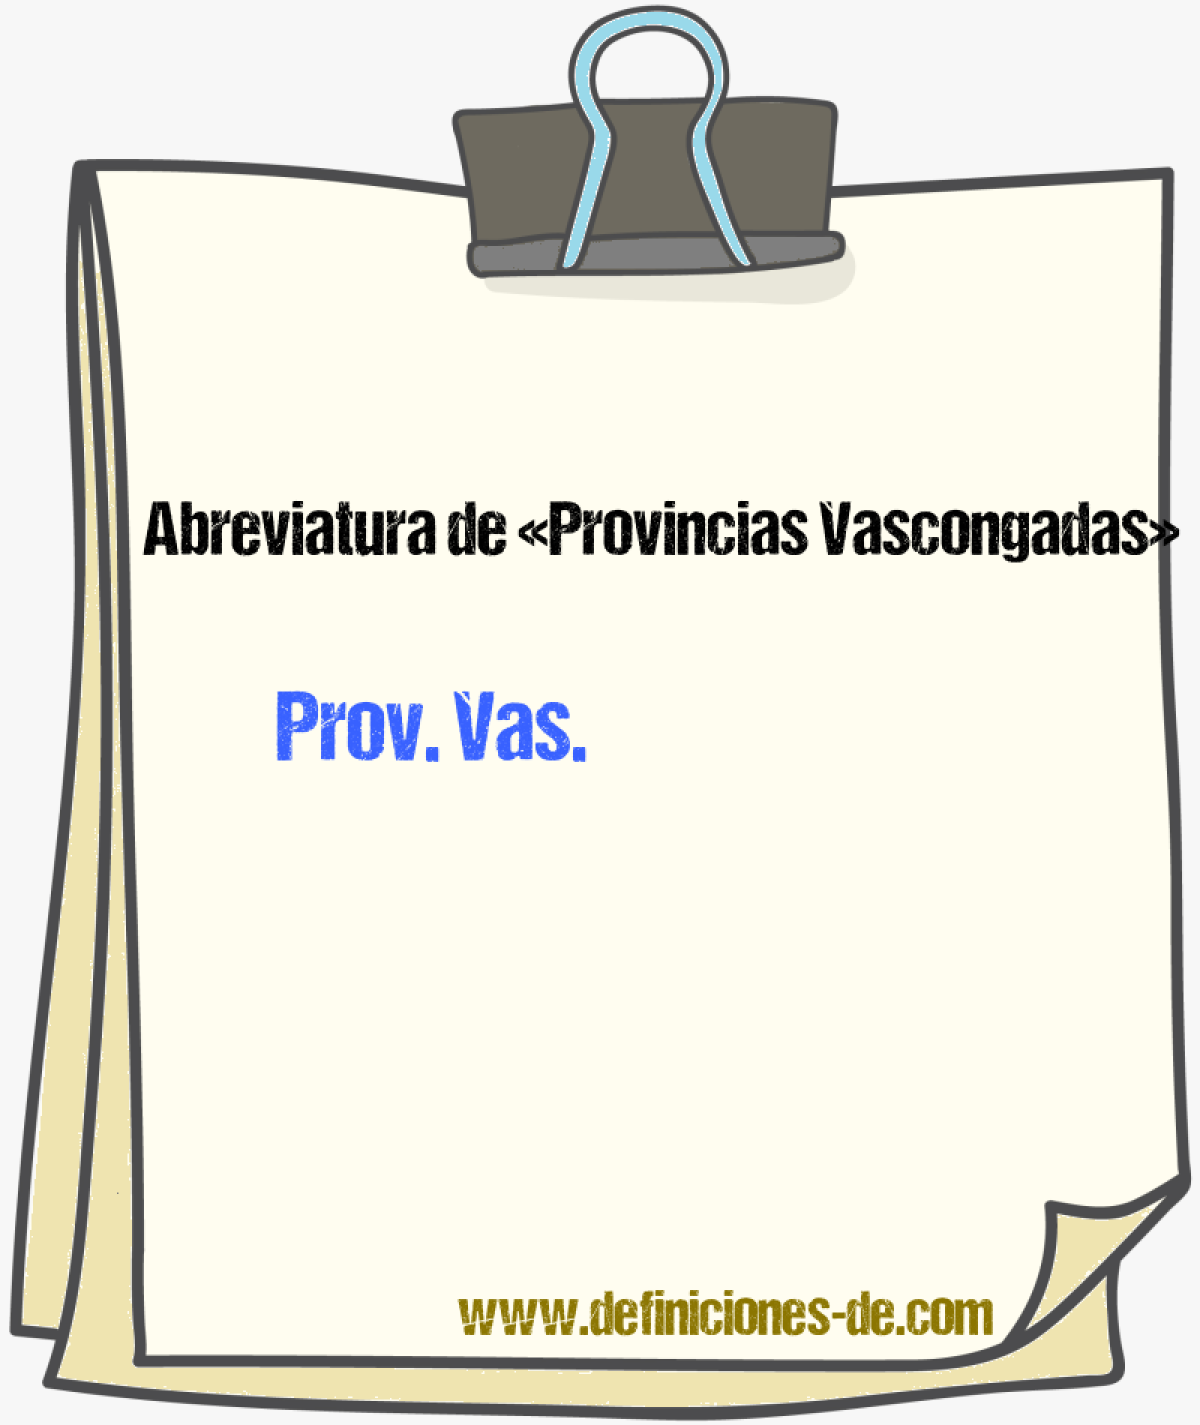 Abreviaturas de Provincias Vascongadas